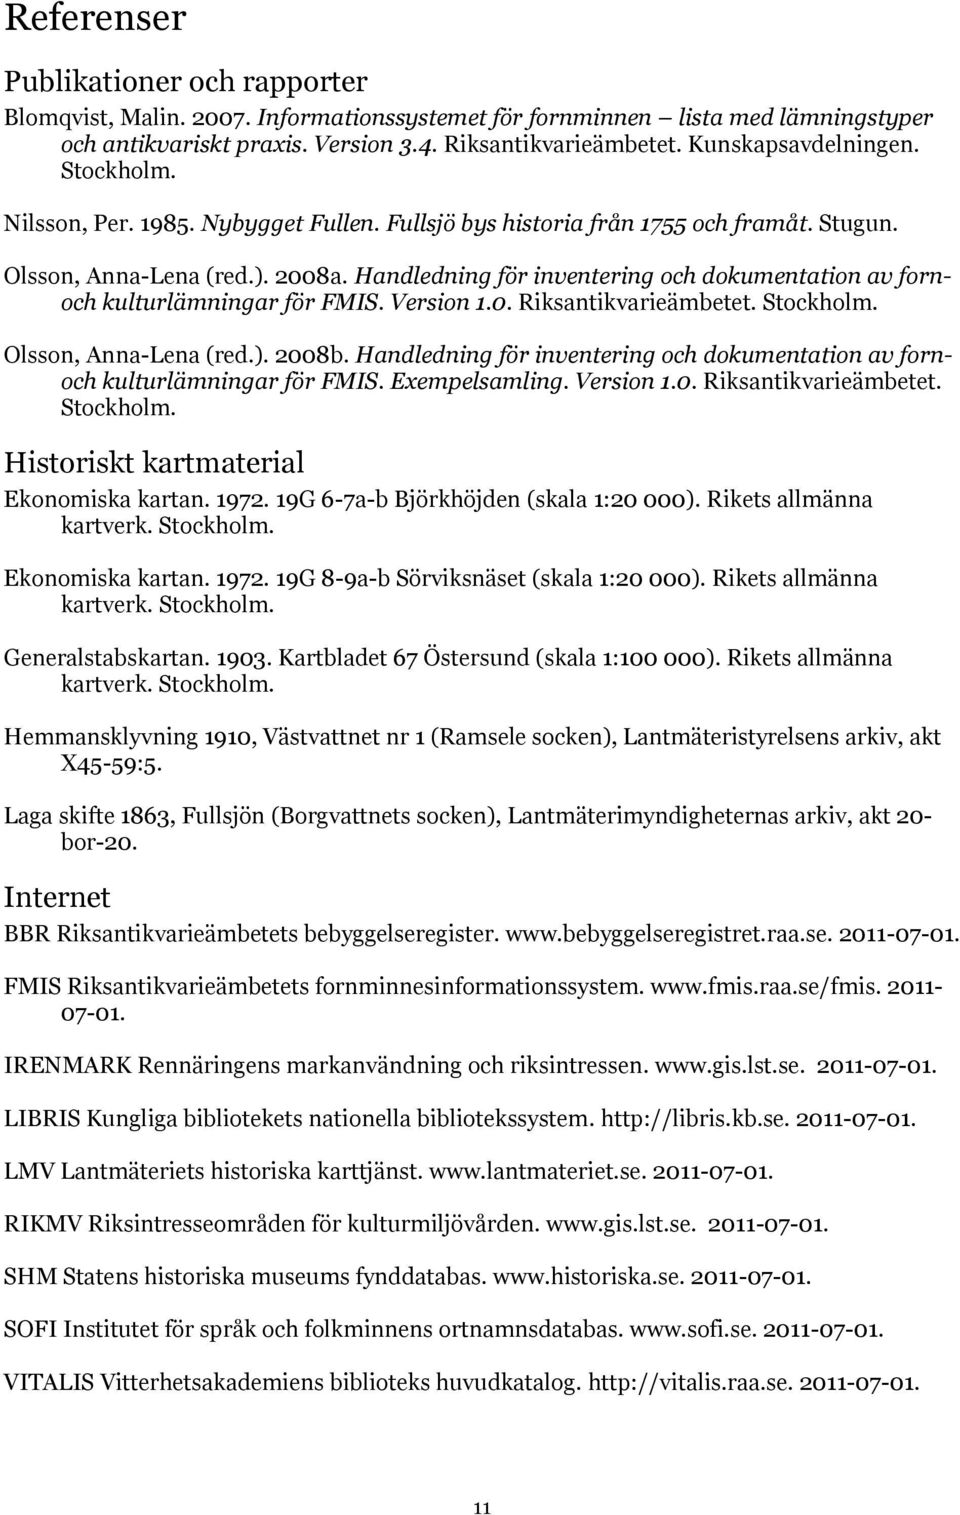 Handledning för inventering och dokumentation av fornoch kulturlämningar för FMIS. Version 1.0. Riksantikvarieämbetet. Stockholm. Olsson, Anna-Lena (red.). 2008b.